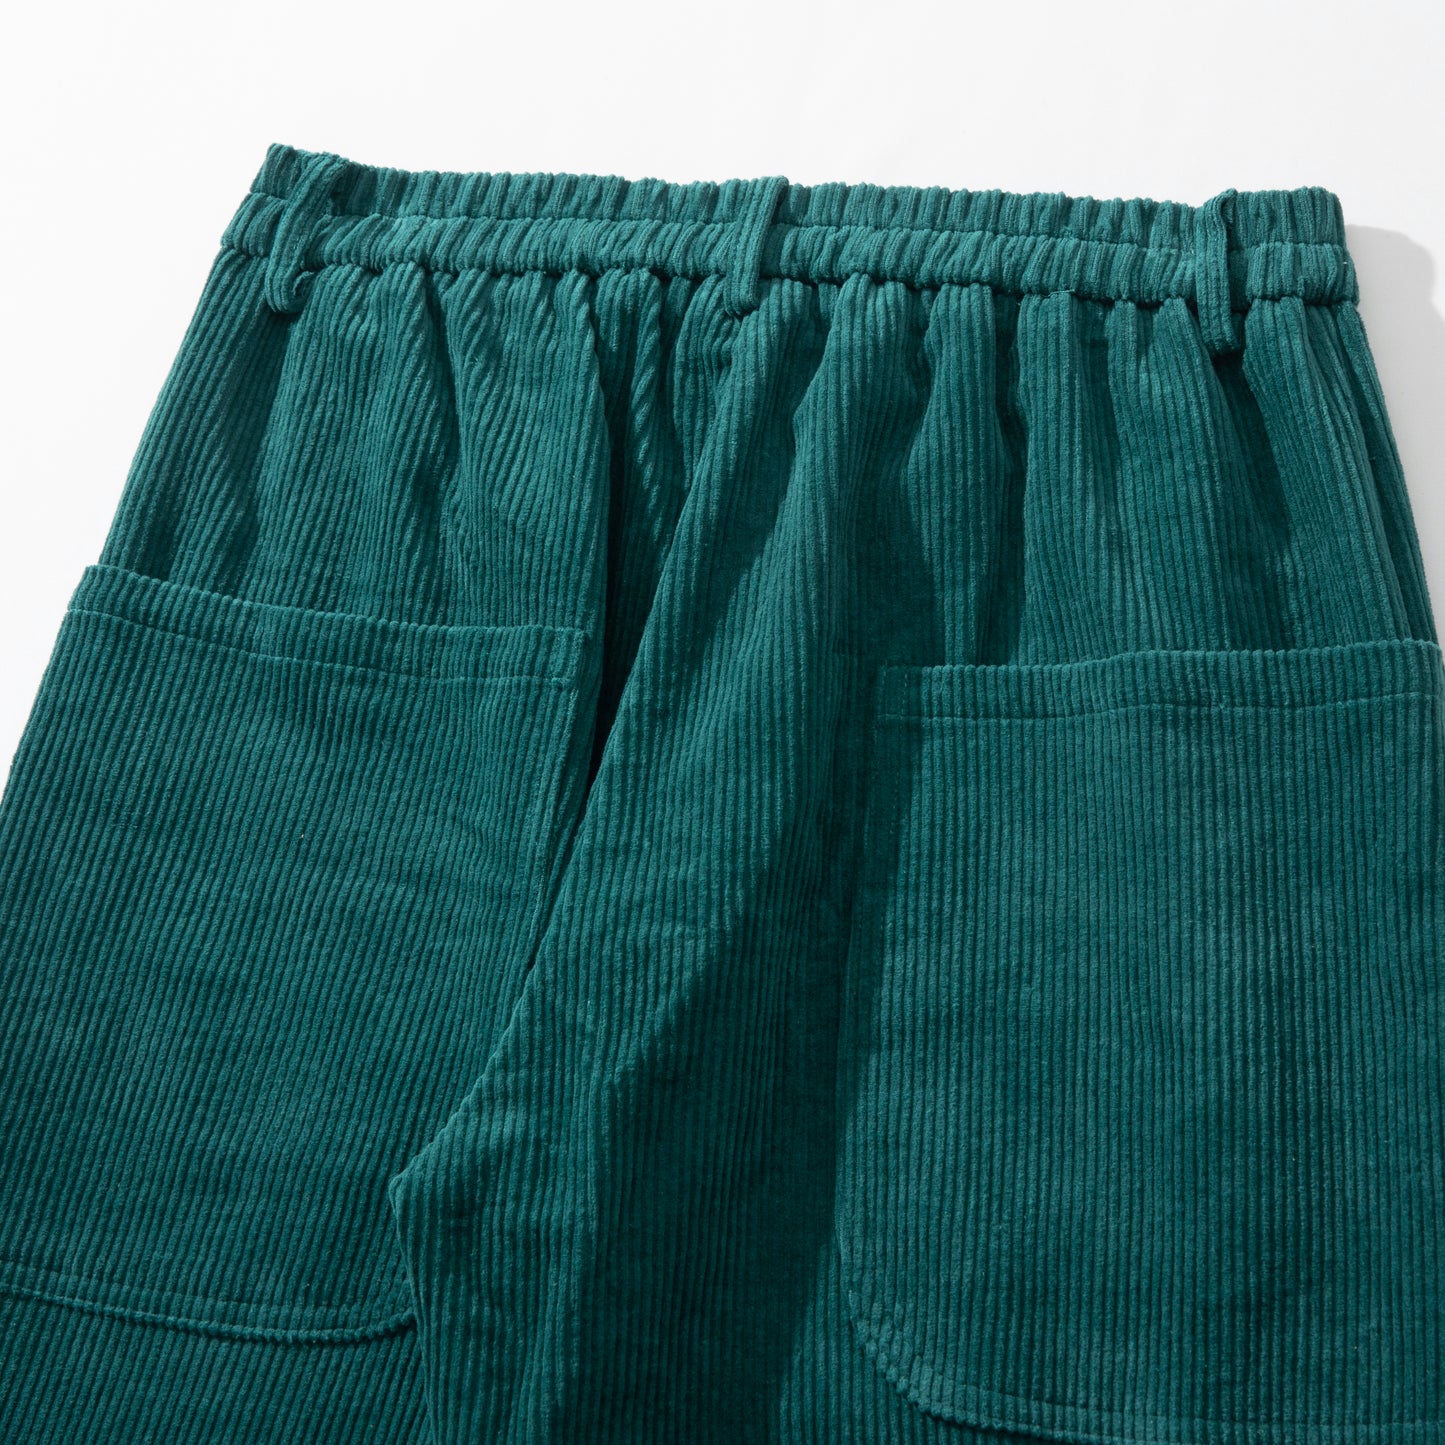 Pants Velvet Series model 4, emerald